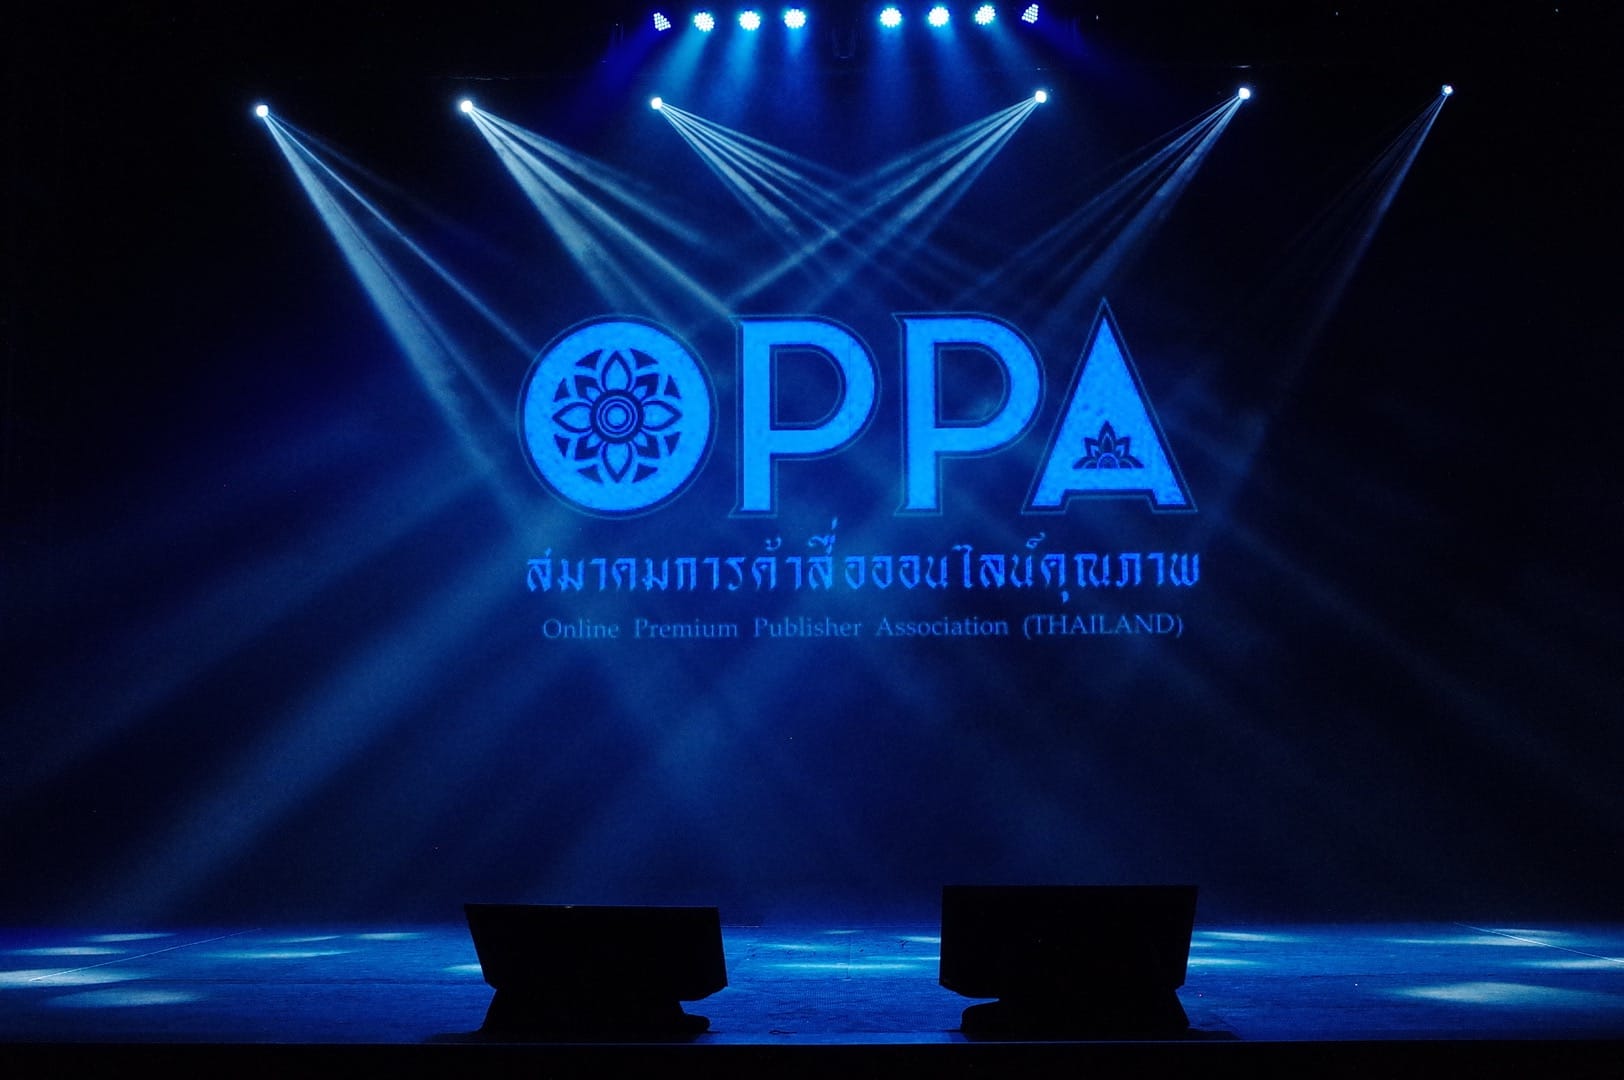 เปิดตัว OPPA เมื่อเว็บไทยรวมตัวสู้ศึกโฆษณาออนไลน์ต่างชาติ